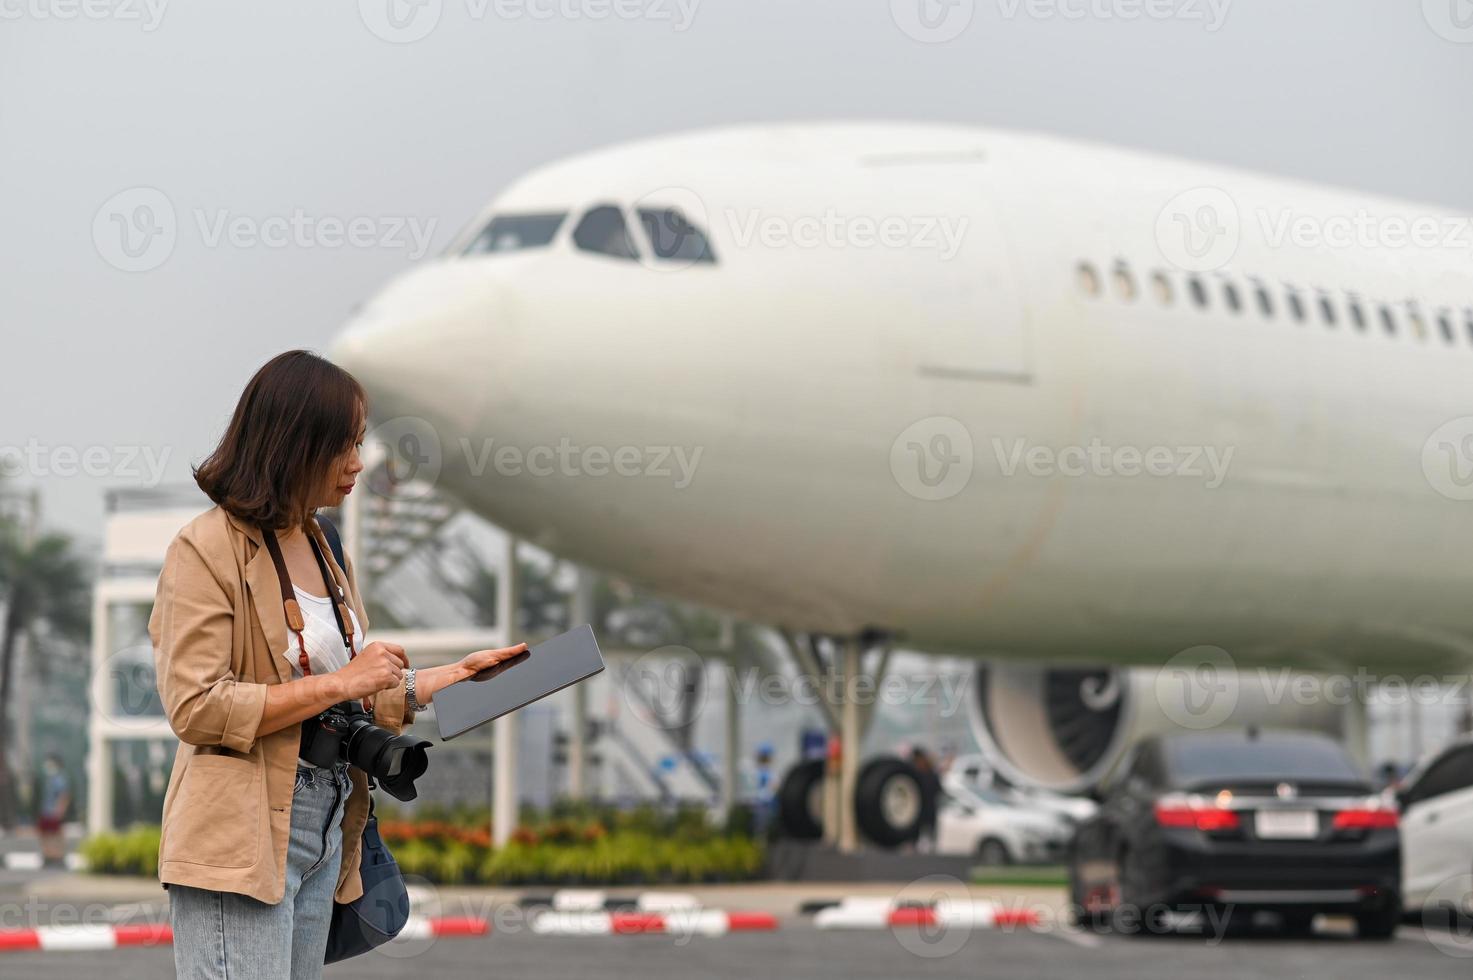 viajantes do sexo feminino encontram informações turísticas no tablet, plano de fundo do avião. foto